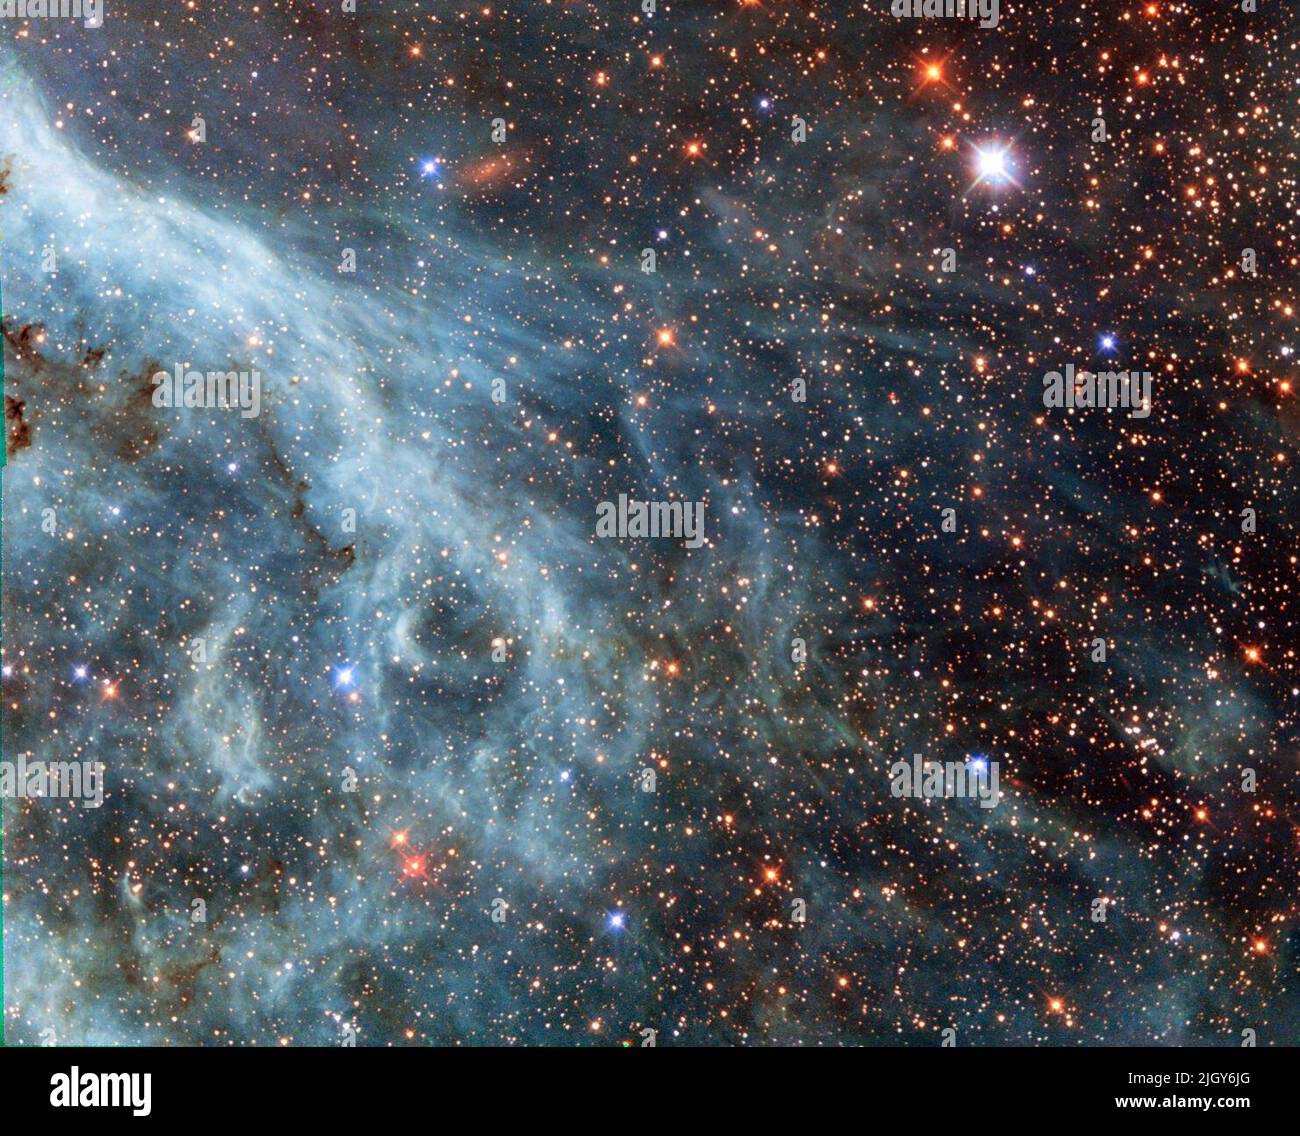 Espace. 13th octobre 2014. Les panaches lumineuses de cette image rappellent une scène sous-marine, avec des courants turquoises et des fils nébuleux qui s'explorent dans les environs. Cependant, ce n'est pas un océan. Cette image montre en fait une partie du grand nuage Magellanique (LMC), une petite galaxie voisine qui orbite notre galaxie, la voie lactée, et apparaît comme un blob flou dans nos cieux. Le télescope spatial Hubble NASA/ESA a fait un grand nombre de pas dans cette galaxie, libérant des images époustouflantes des nuages de gaz et des étoiles étincelantes (opo9944a, heic1301, potw1408a). Cette image sh Banque D'Images